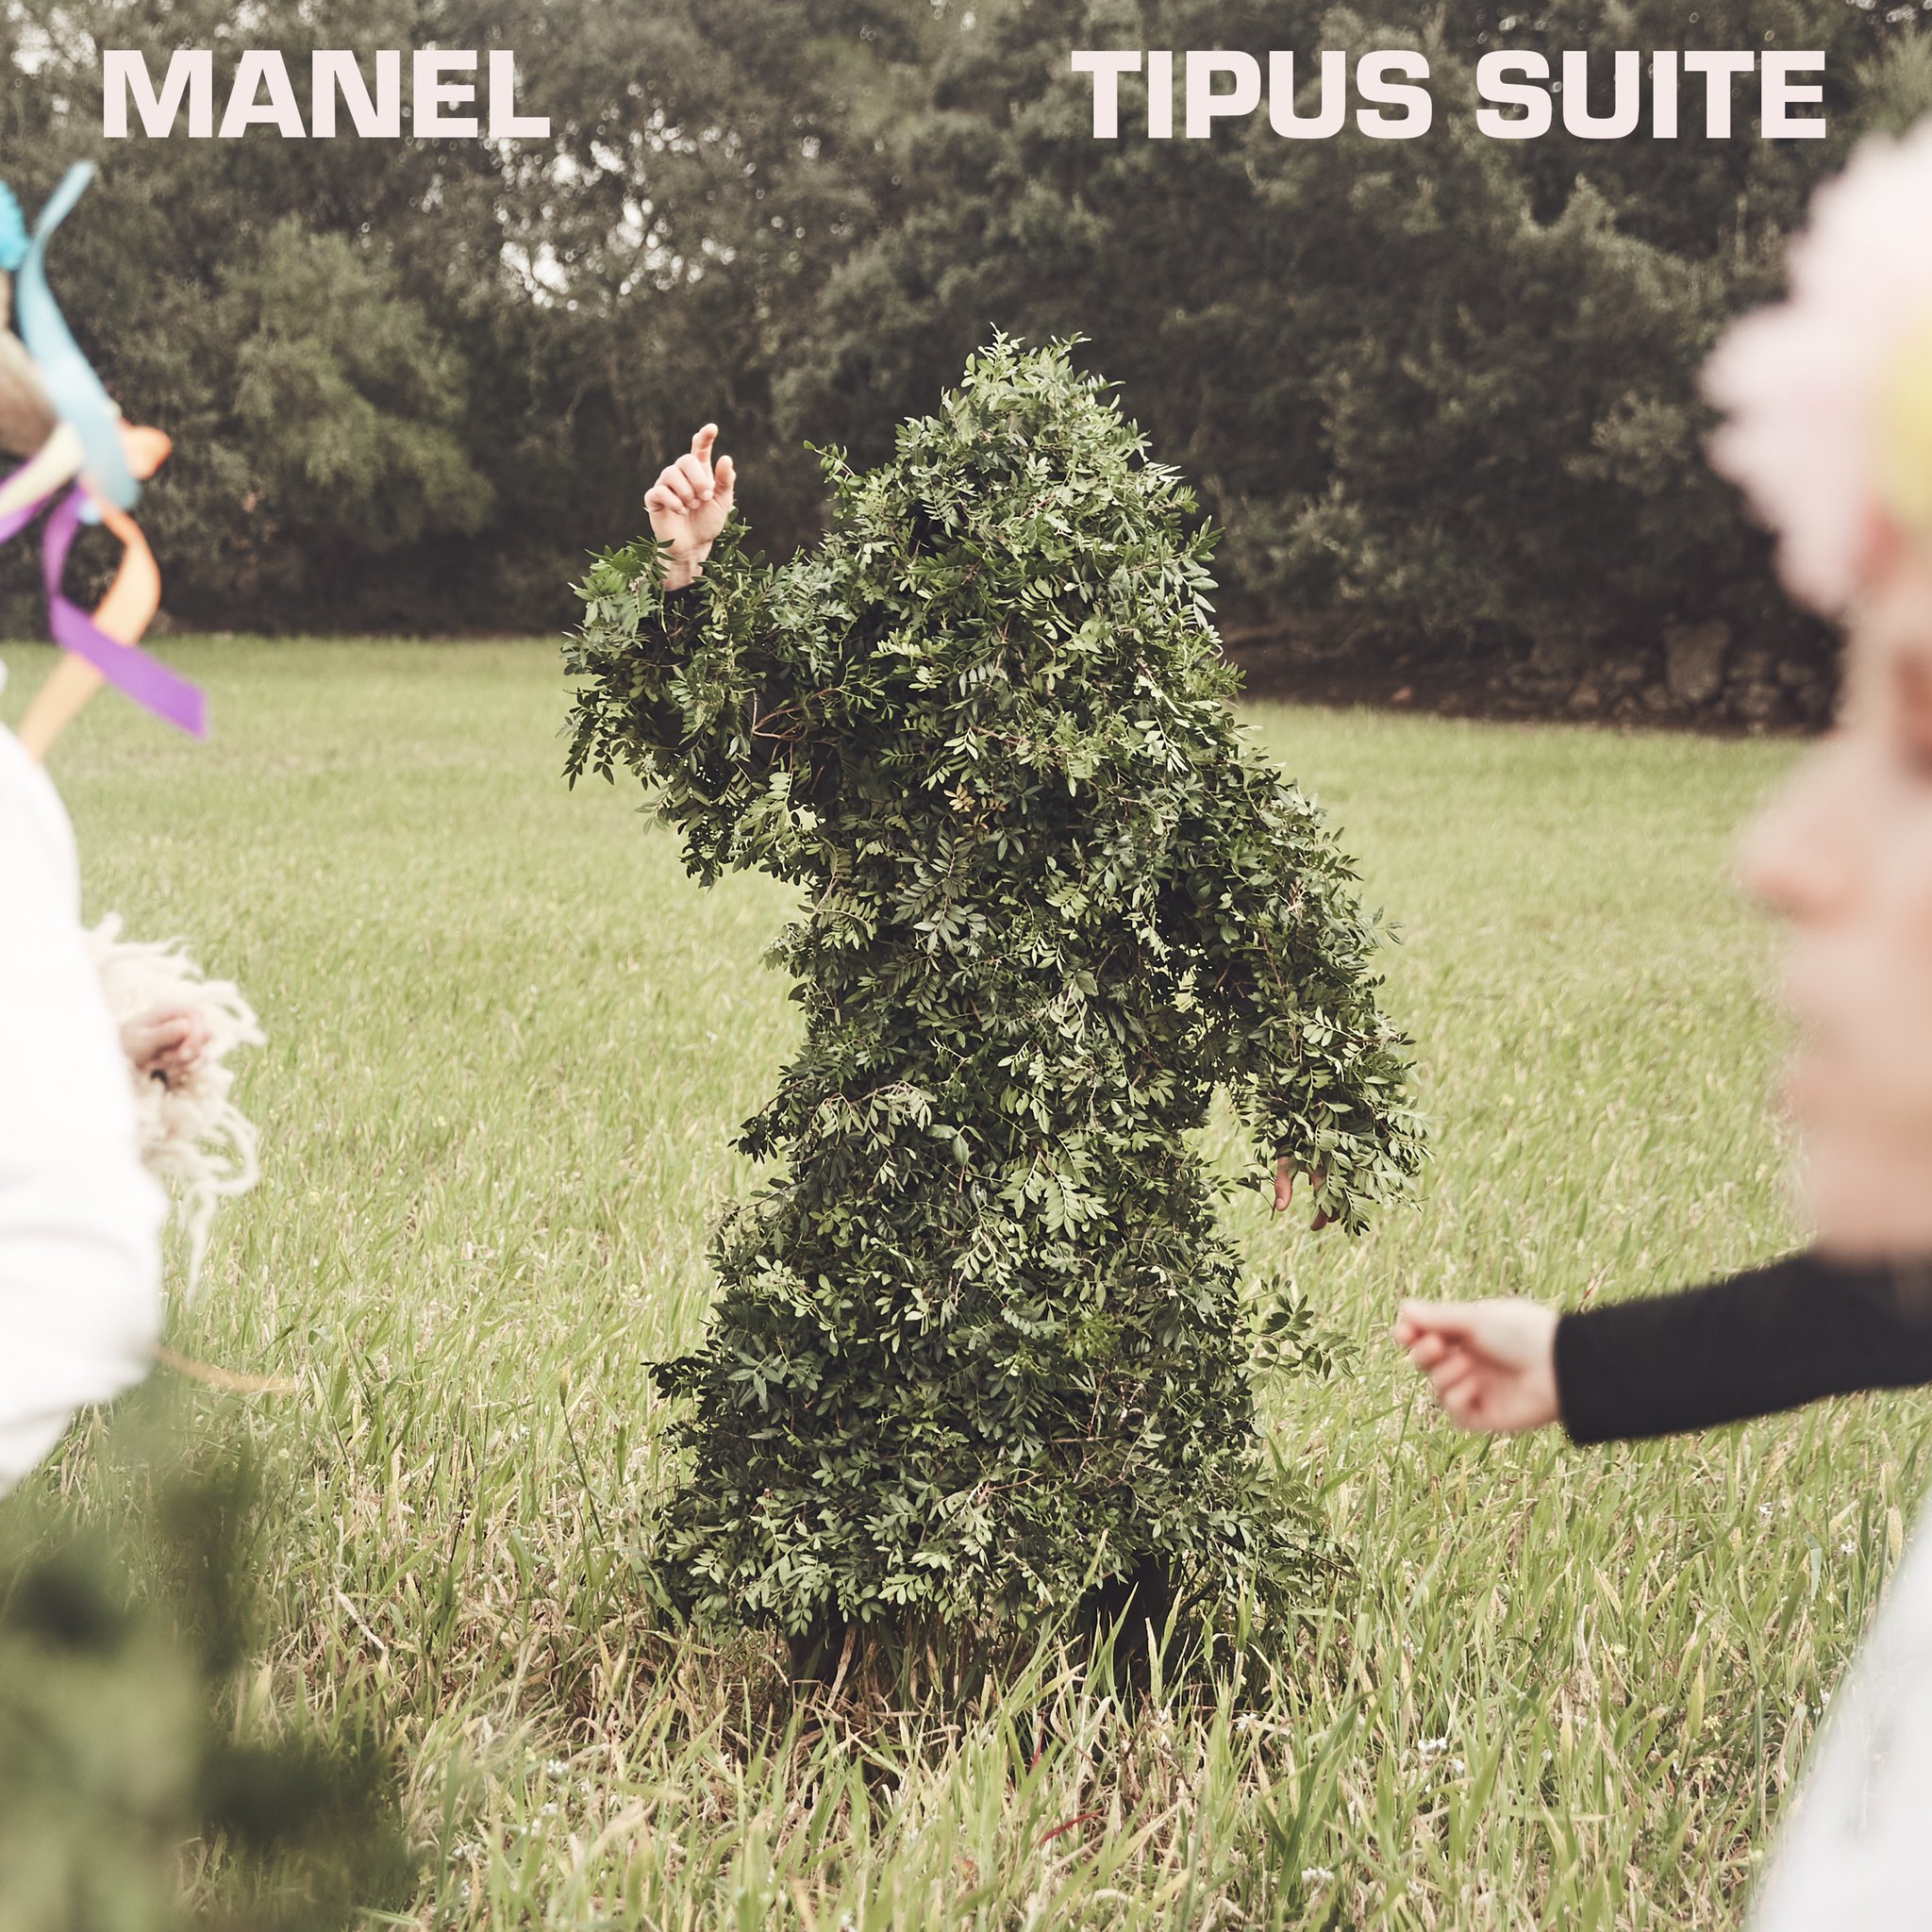 Així sona 'Tipus Suite', el nou tema pandèmic dels Manel